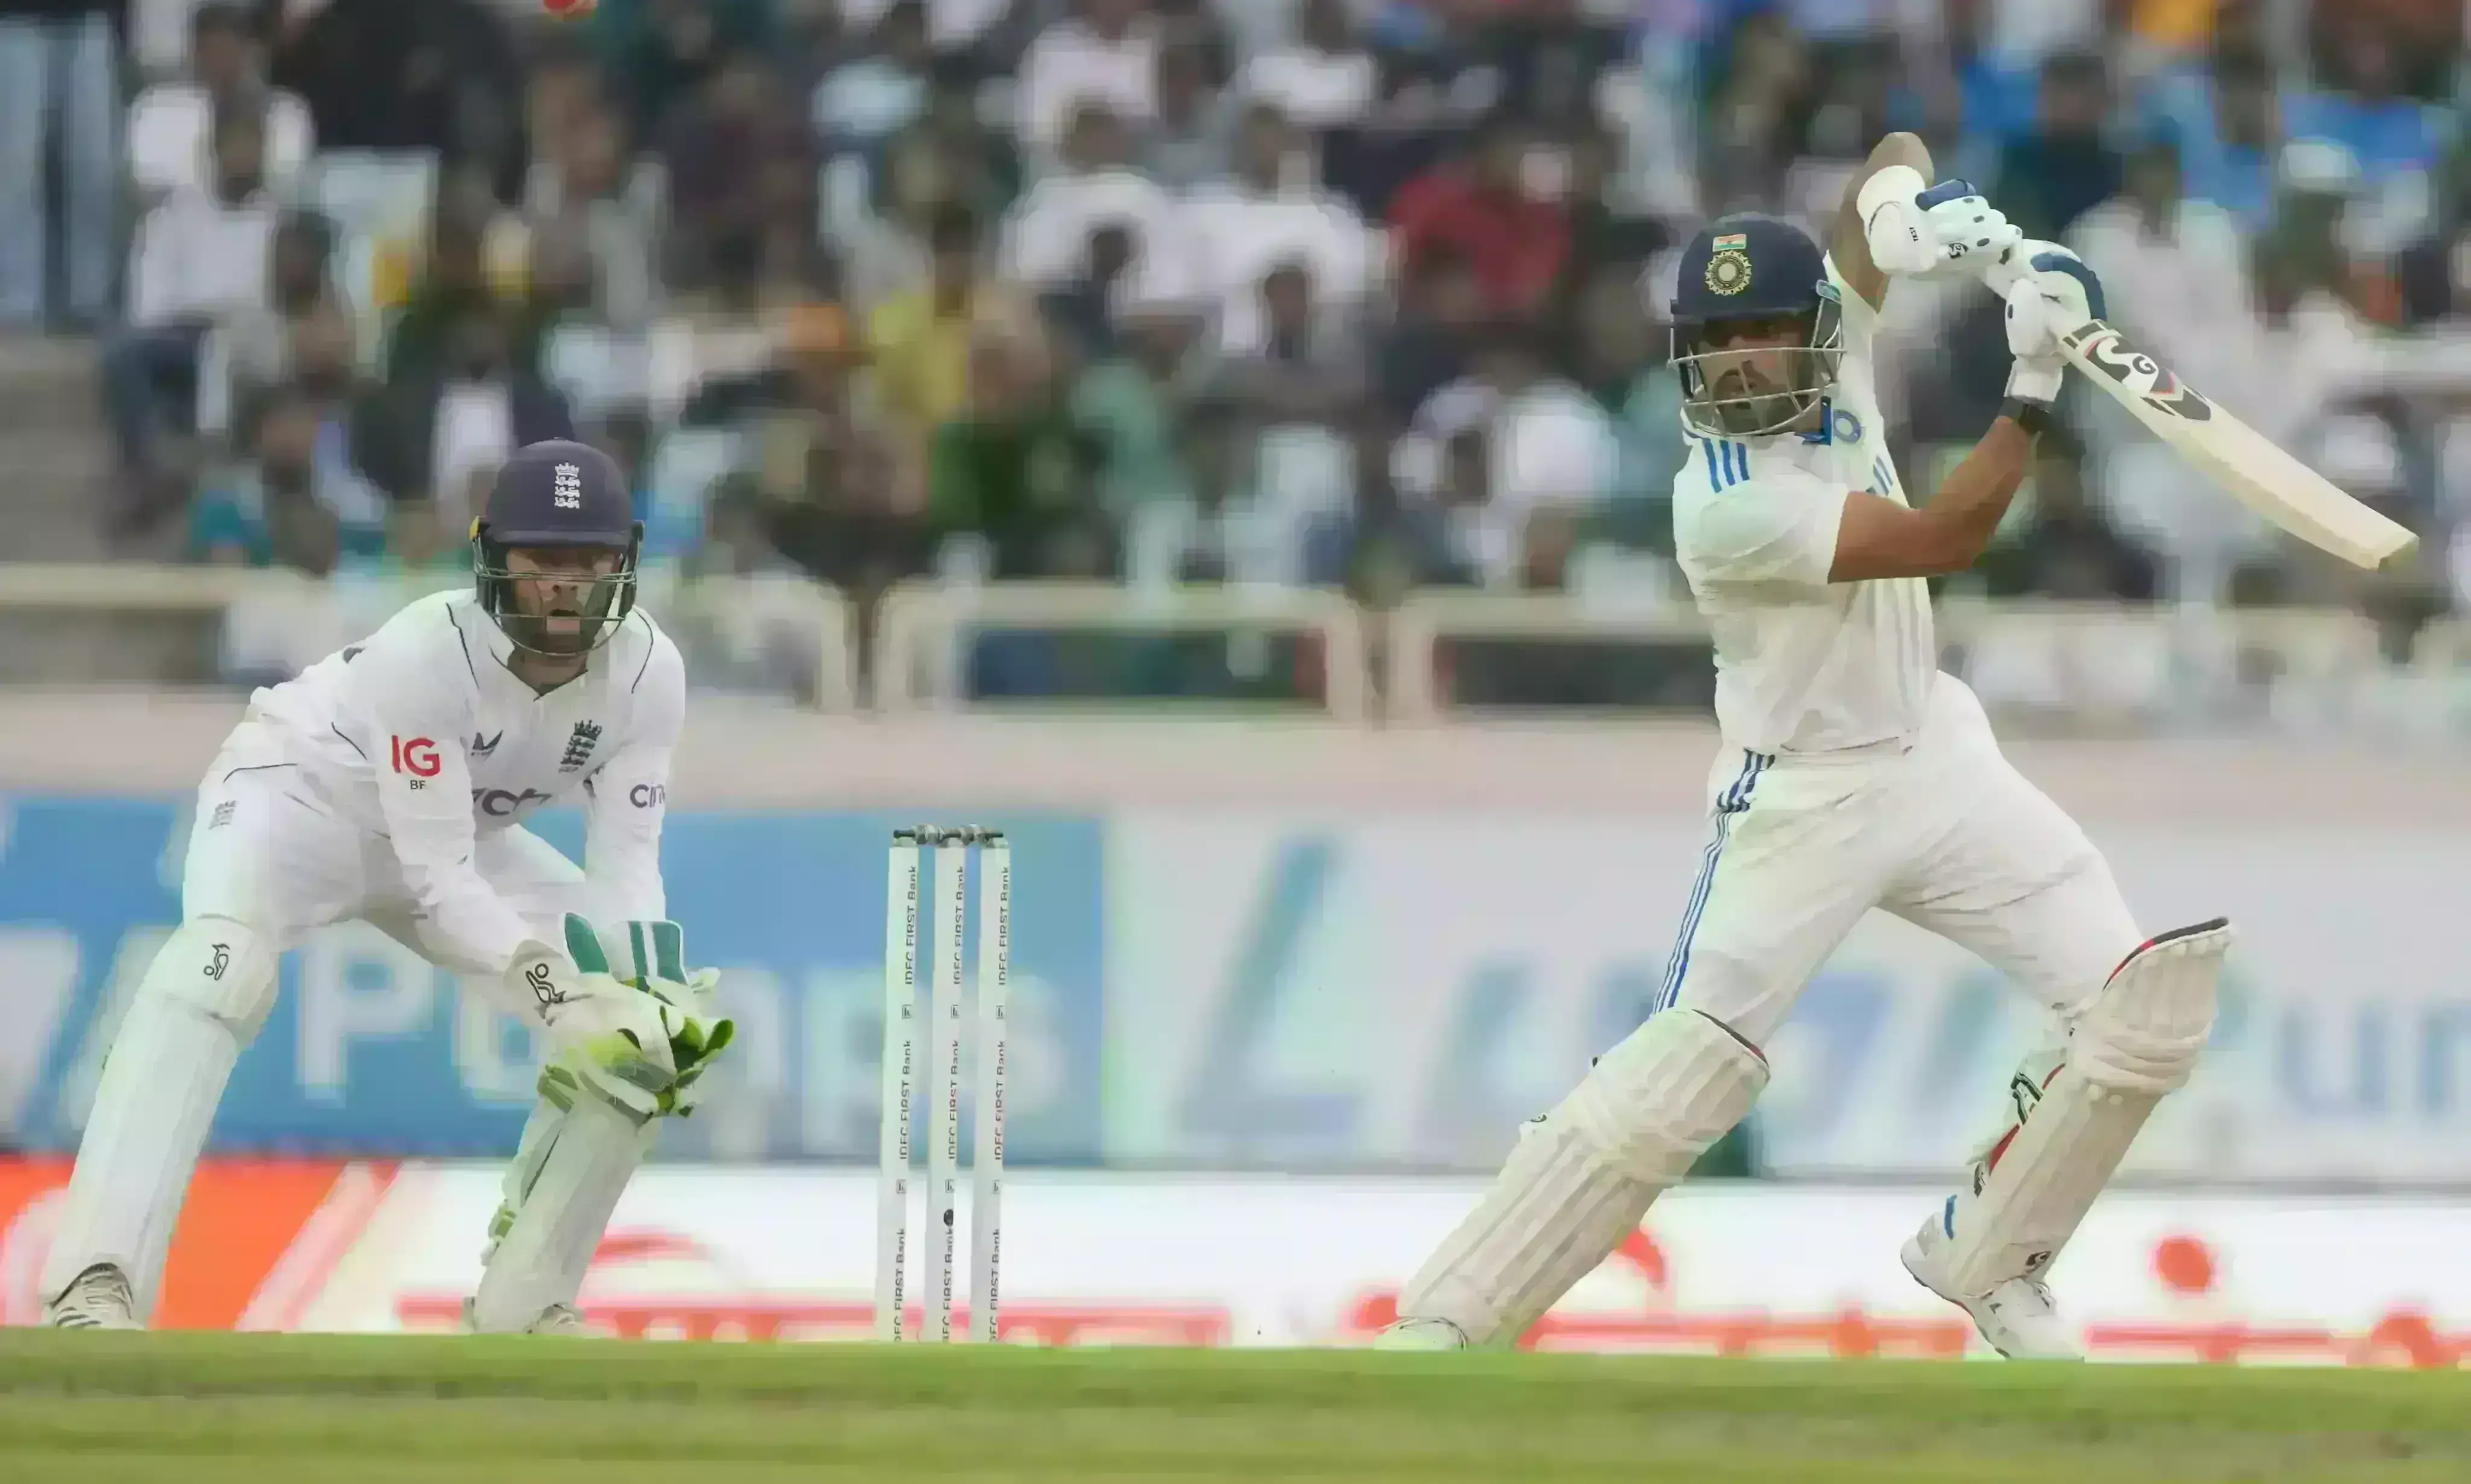 IND vs ENG : इंग्लिश गेंदबाजों के जाल में फंसा भारत, इंग्लैंड से 134 रन पीछे